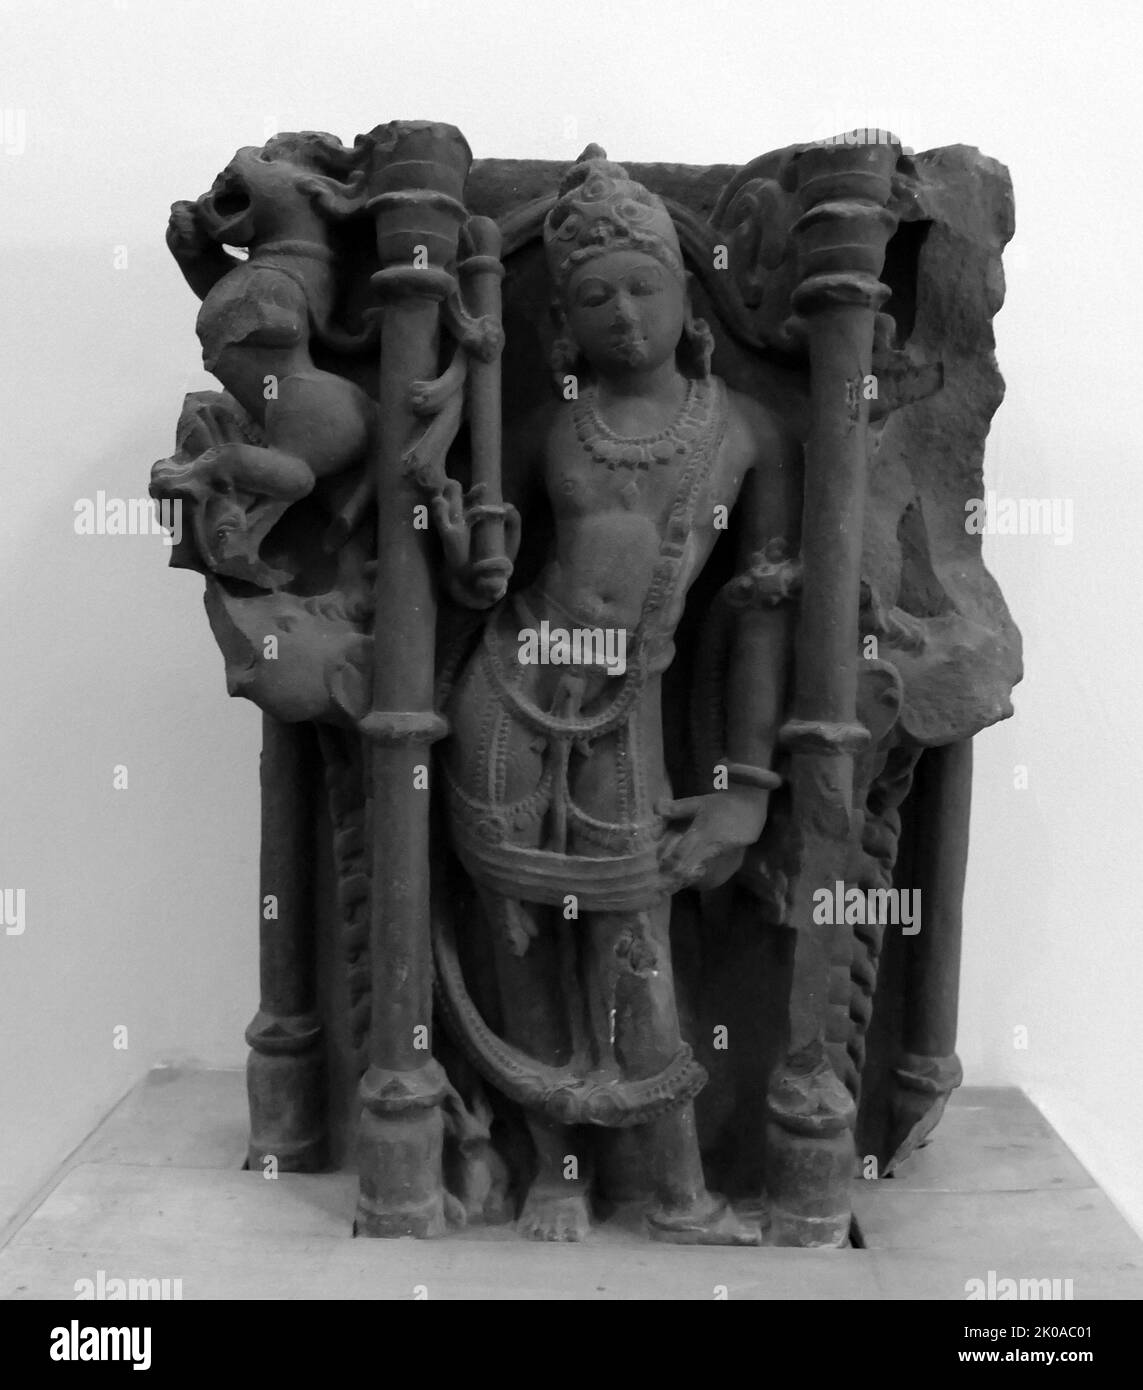 Les gardiens des directions (Dikpala) sont les divinités qui gouvernent les directions spécifiques de l'espace selon l'hindouisme, le Jainisme et le bouddhisme vajrayana, en particulier Kalacakra. En tant que groupe de huit divinités, ils sont appelés Asta-Dikpala, qui signifie gardiens de huit directions. Sculpture indienne 5th Century AD Banque D'Images